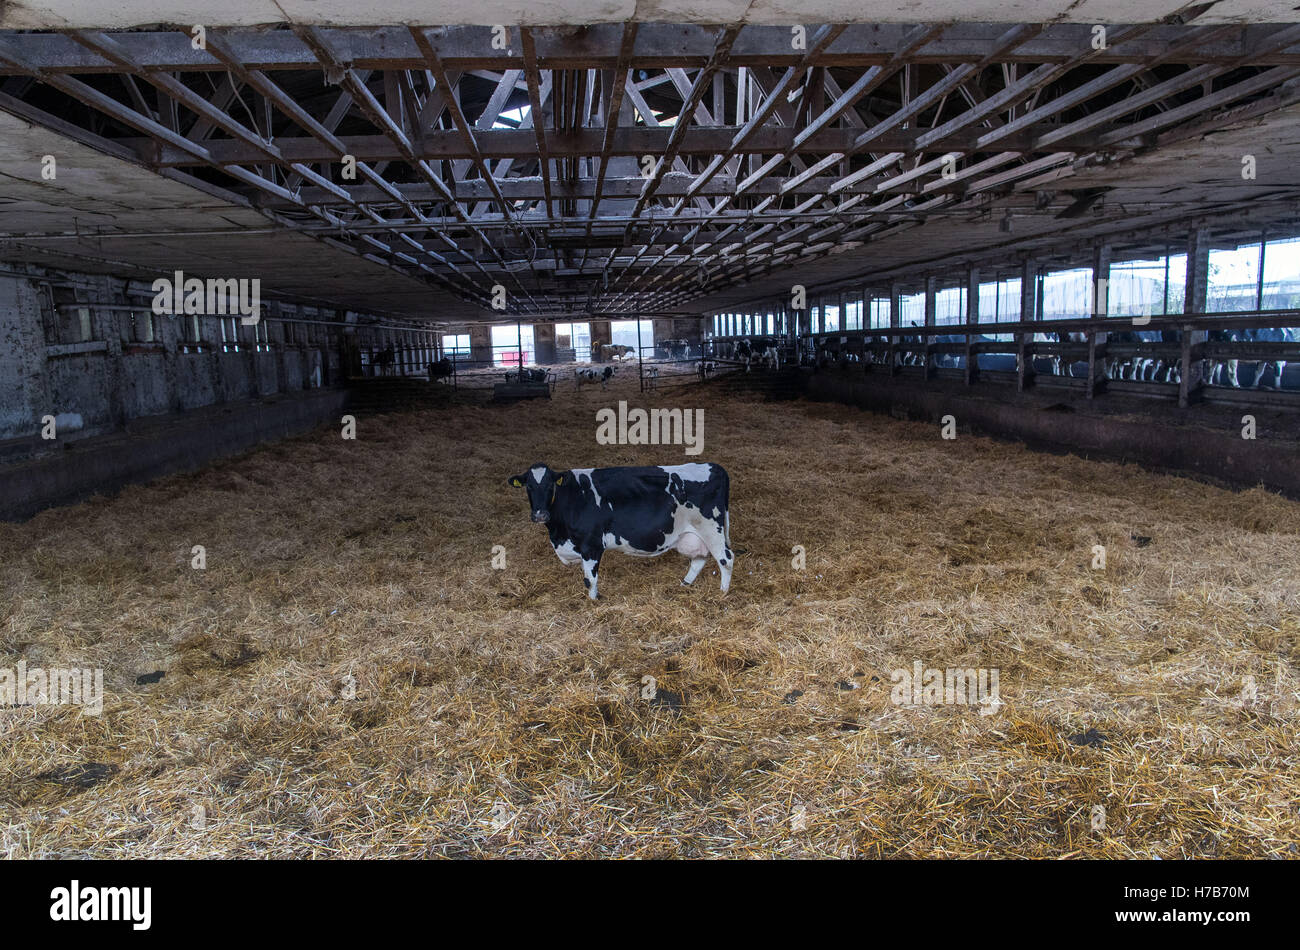 Eine der letzten Milchkühe steht am 25.10.2016 im weitläufigen Stall der Erzeugergemeinschaft Cramonshagen in Böken bei Schwerin (Mecklenburg-Vorpommern). Die Genossenschaft stellt nun die unrentable Milchviehhaltung ein, die letzten der einst 400 Kühe werden in den nächsten Tagen abtransportiert und danach die alten Ställe abgerissen. In der seit mehr als zwei Jahren anhaltenden Milchmarktkrise stellten in Deutschland laut Bundesagrarministerium rund 5.000 Betriebe die Milchproduktion ein. Foto: Jens Büttner/dpa (zu dpa «Auslaufmodell Kuhstall - Bauern geben Milchproduktion auf» vom 04.11.201 Stock Photo